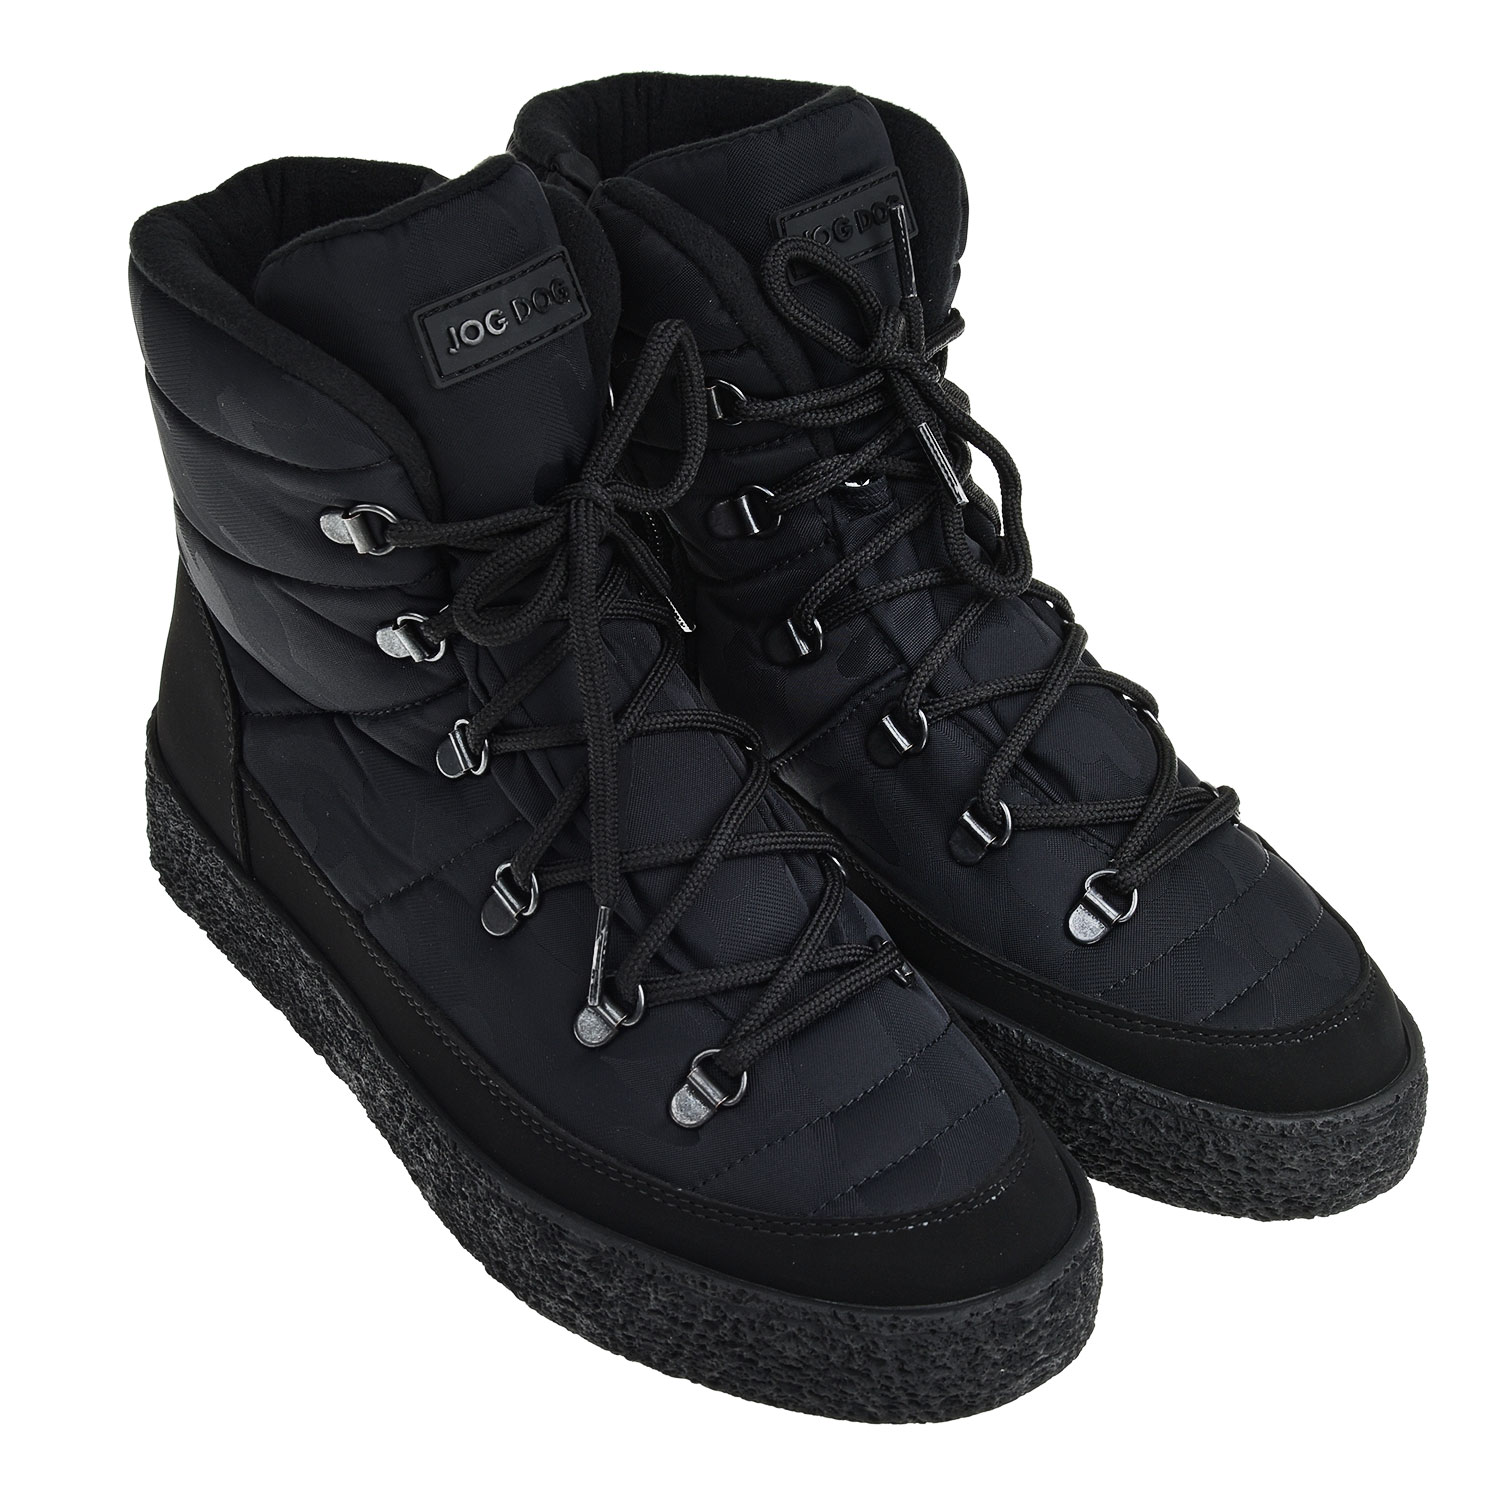 Черные мембранные сапоги с камуфляжным принтом Jog Dog детские, размер 43, цвет черный